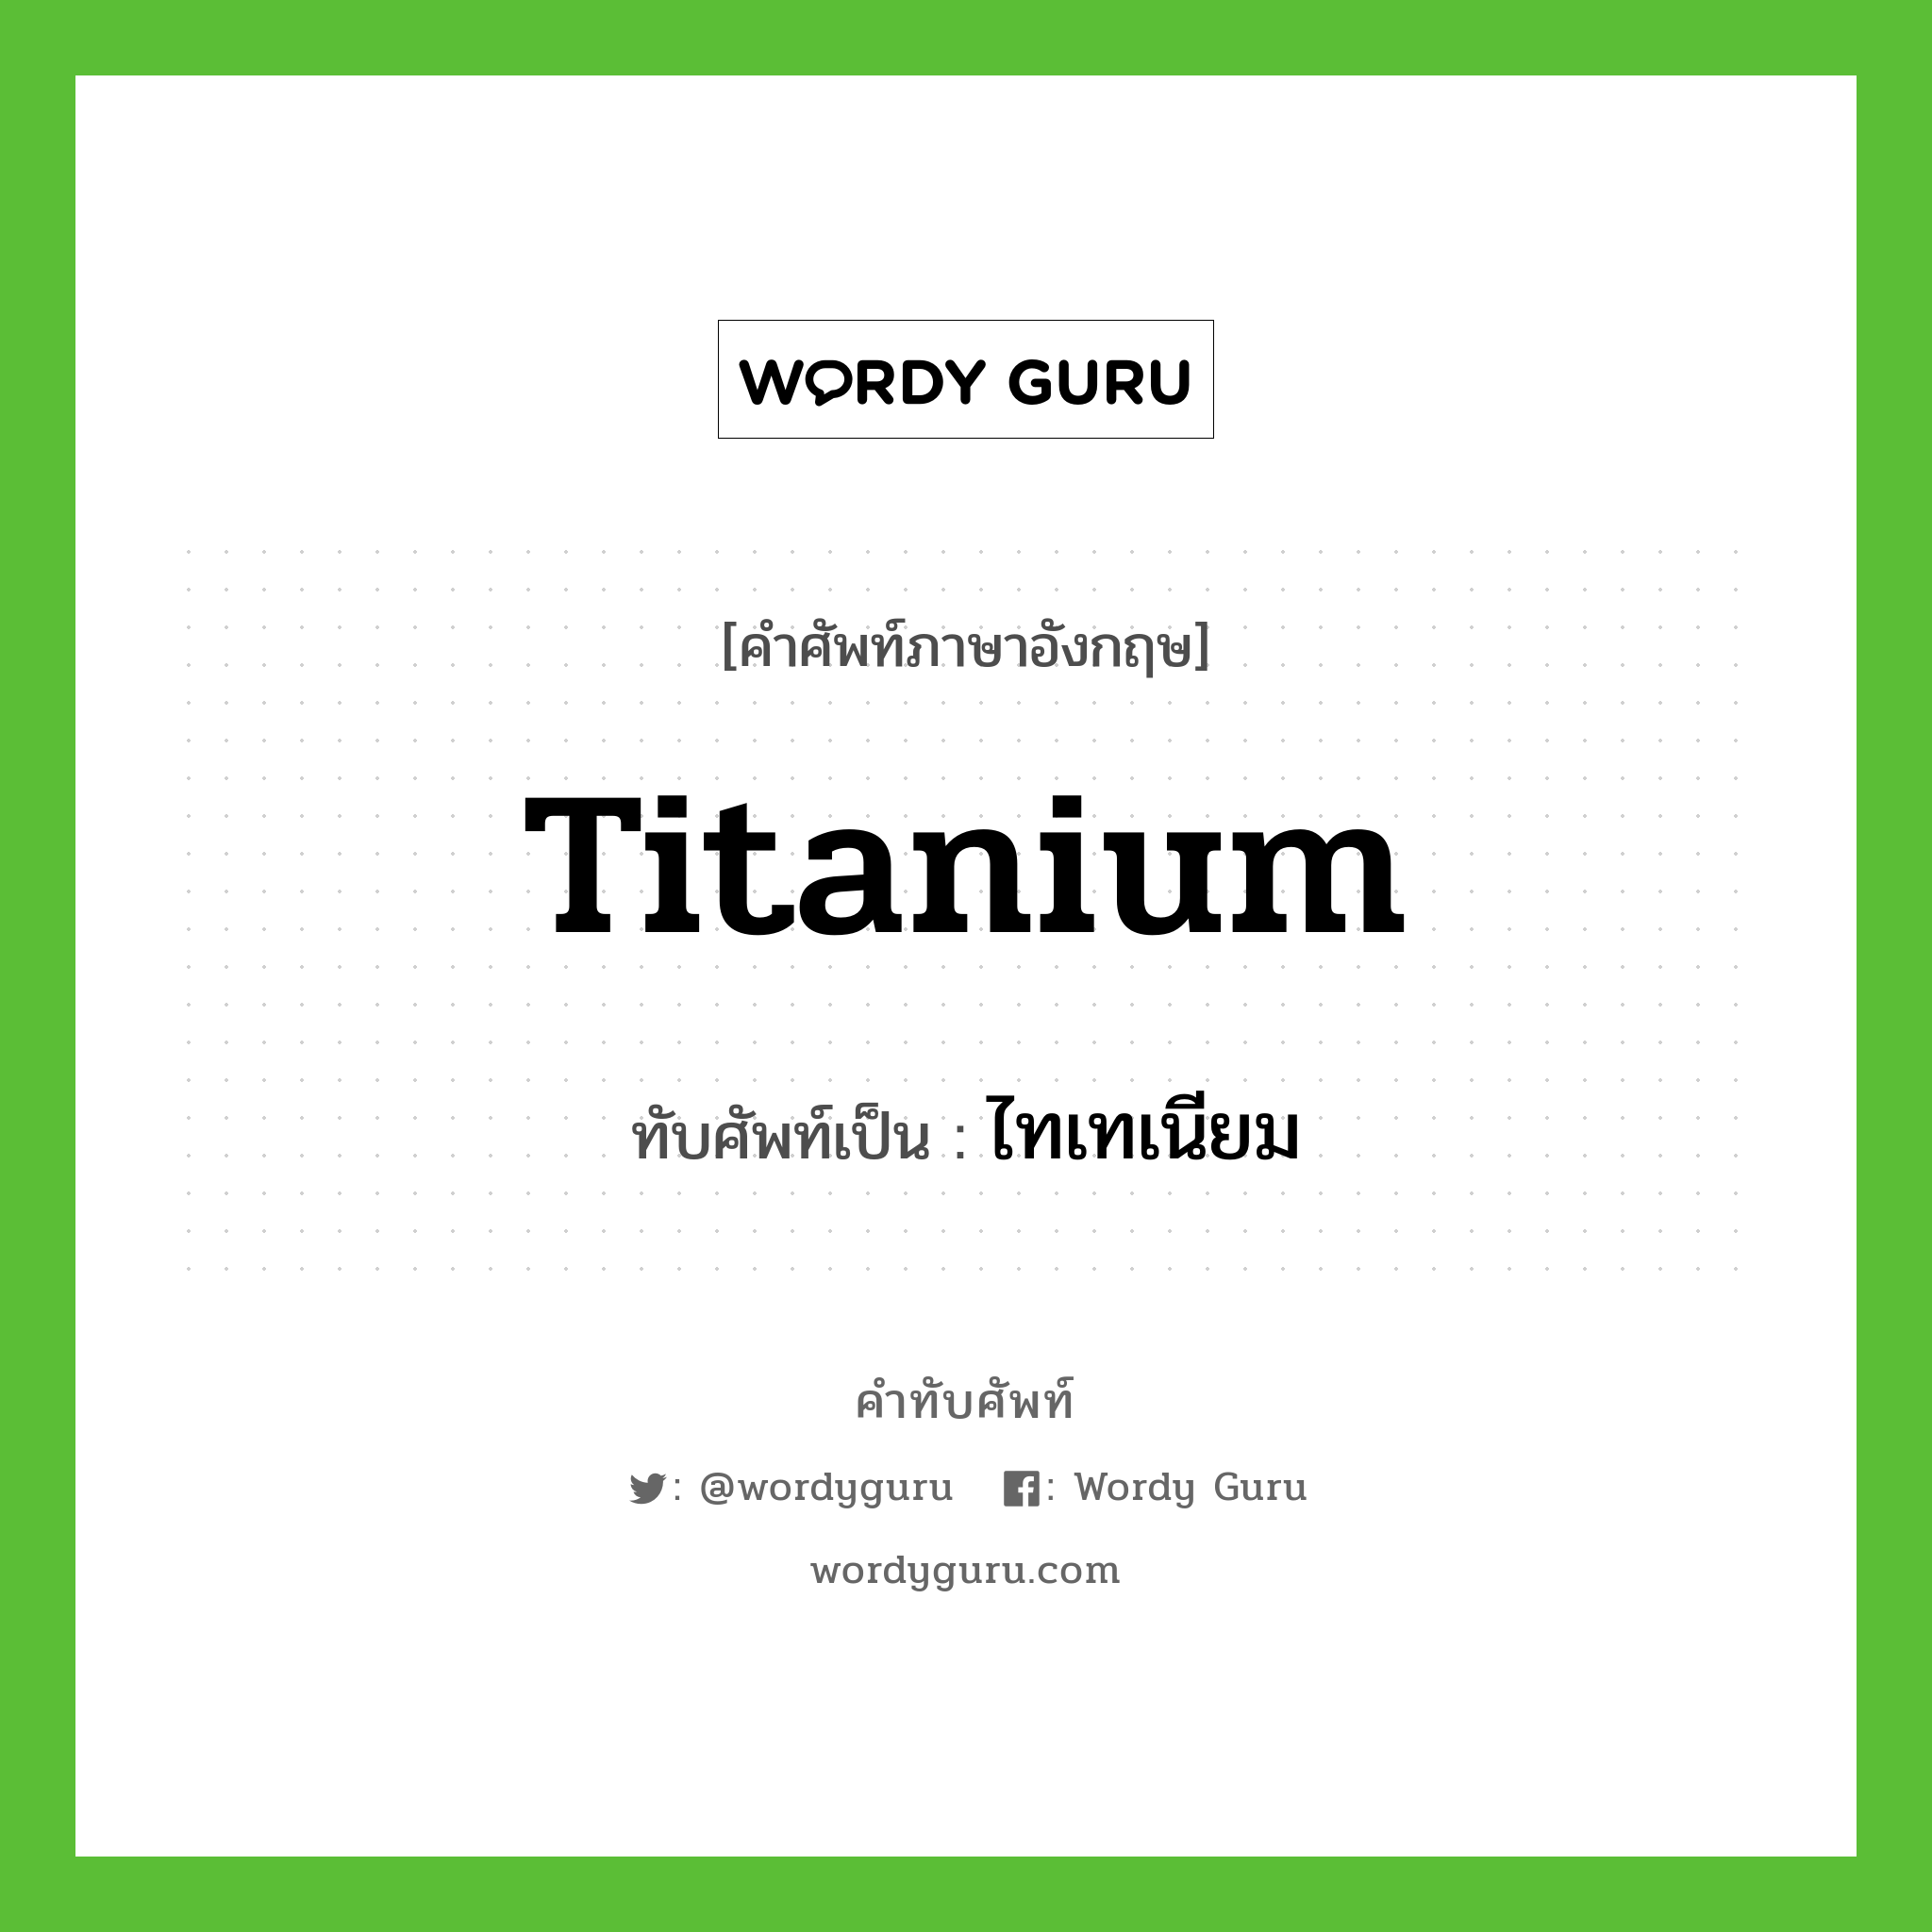 ไทเทเนียม เขียนอย่างไร?, คำศัพท์ภาษาอังกฤษ ไทเทเนียม ทับศัพท์เป็น titanium